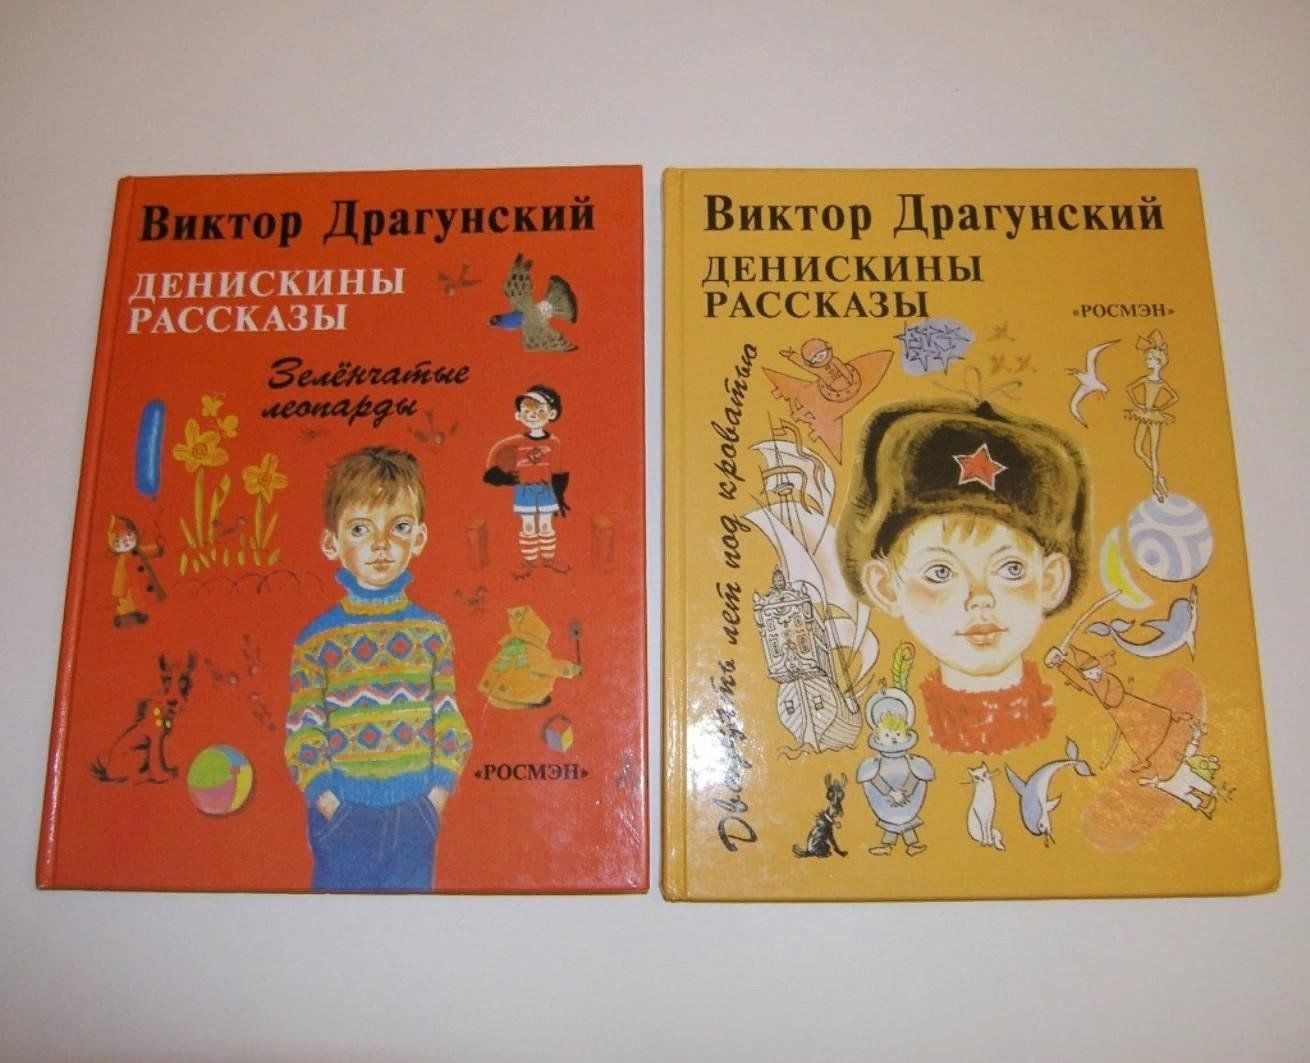 Тест по рассказам драгунского. Обложки книг Виктора Драгунского.